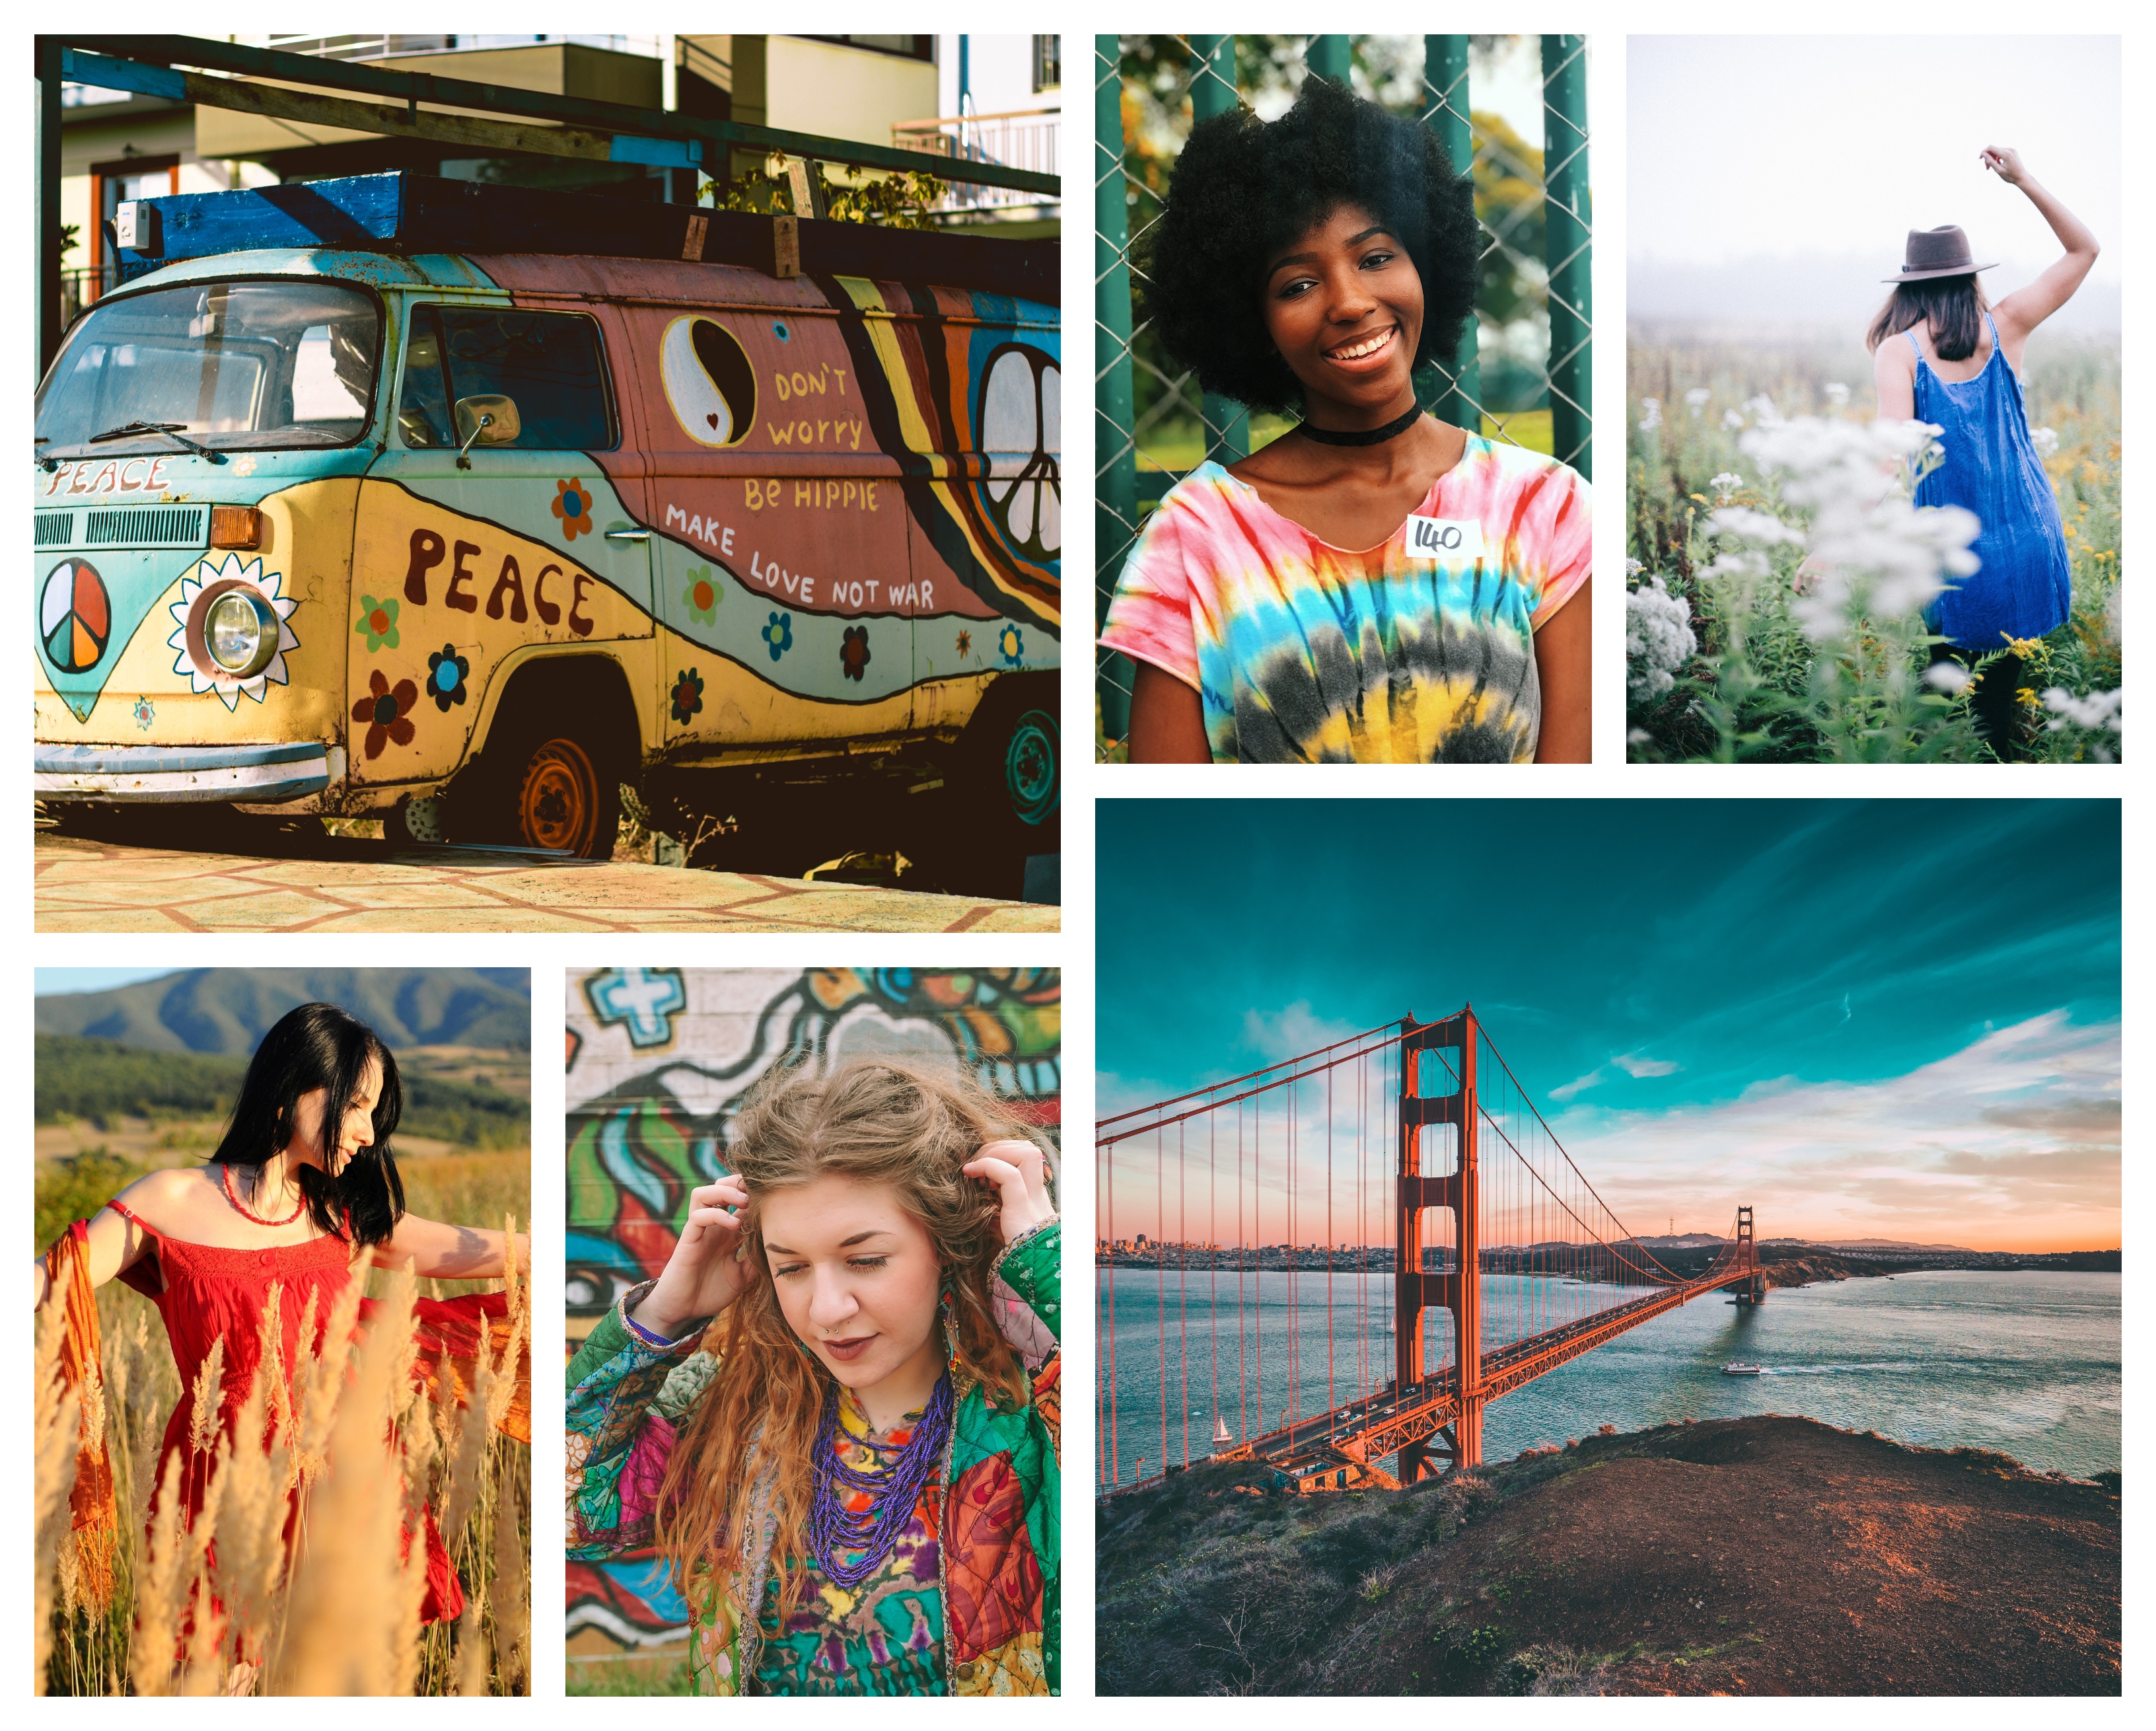 Hippie chic mode d'été 2020, comment s’habiller bien cet ete, San Francisco inspiration, Californie liberté